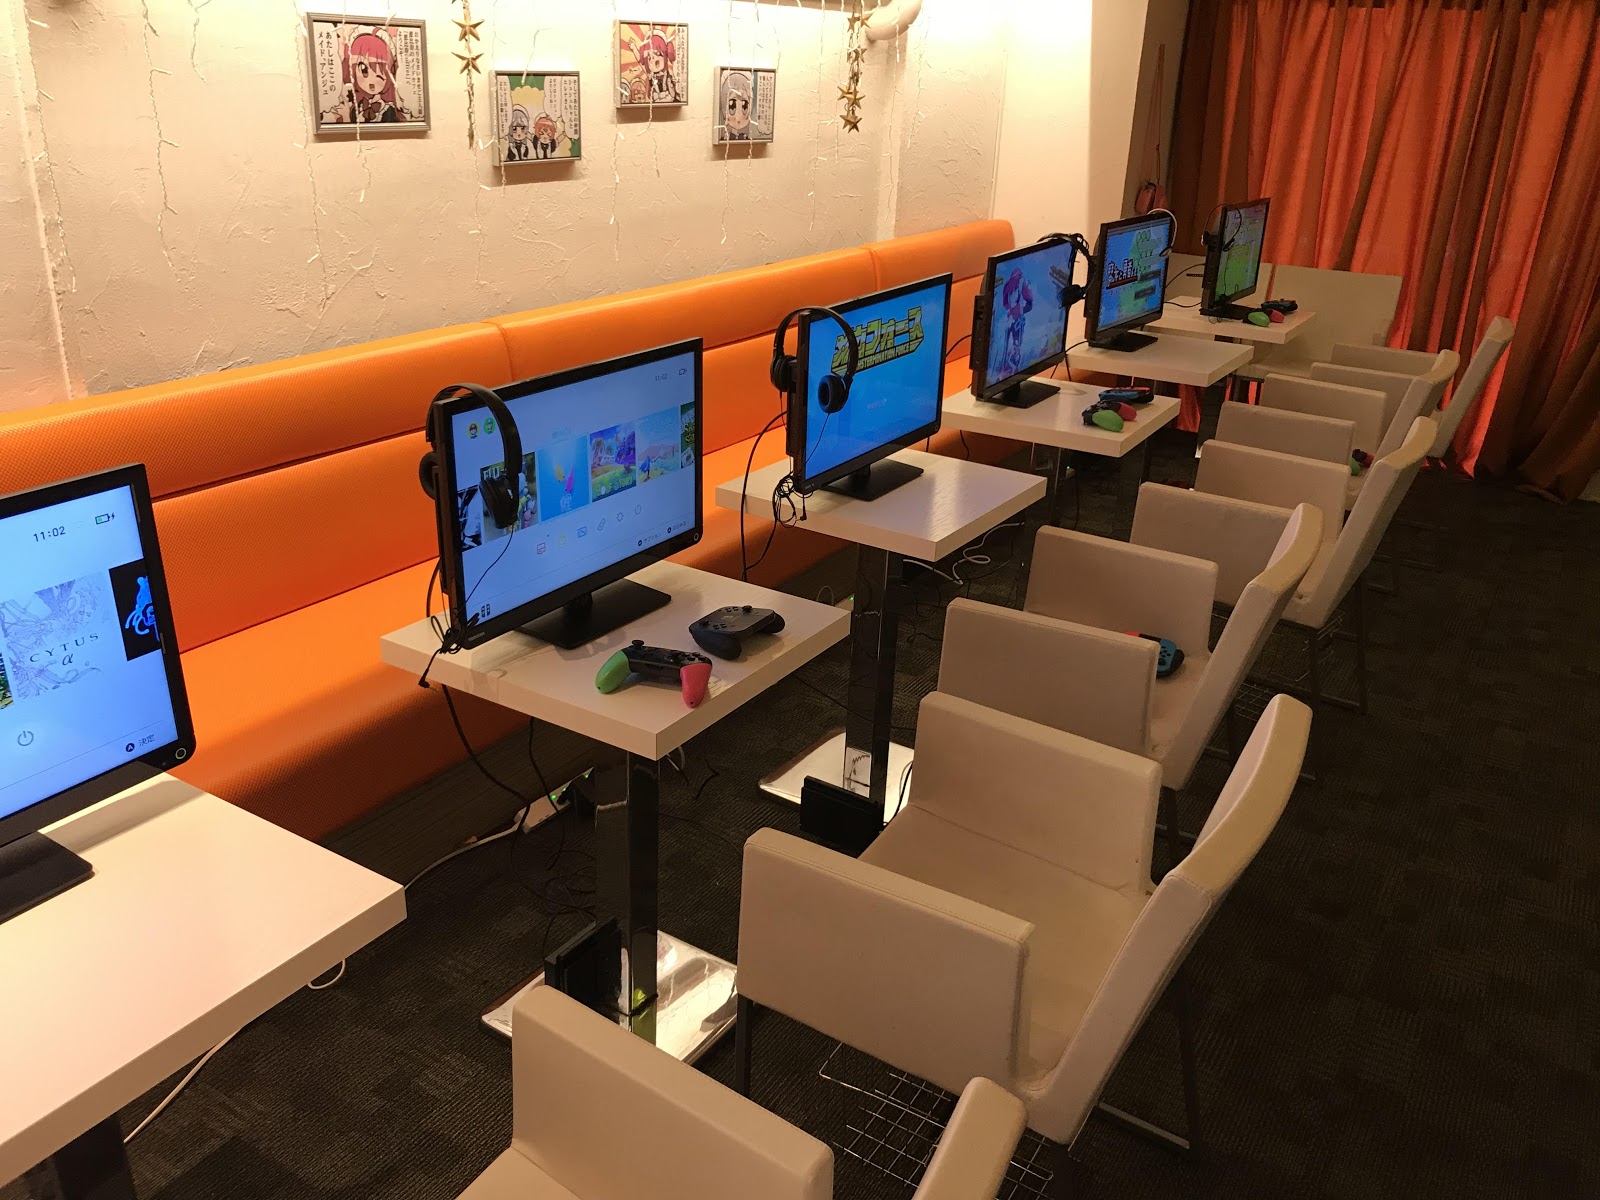 フライハイワークスのゲームを自由に遊べるカフェ「フライハイカフェ」が東京・恵比寿にオープンフライハイワークスのゲームを自由に遊べるカフェ「フライハイカフェ」が東京・恵比寿にオープン